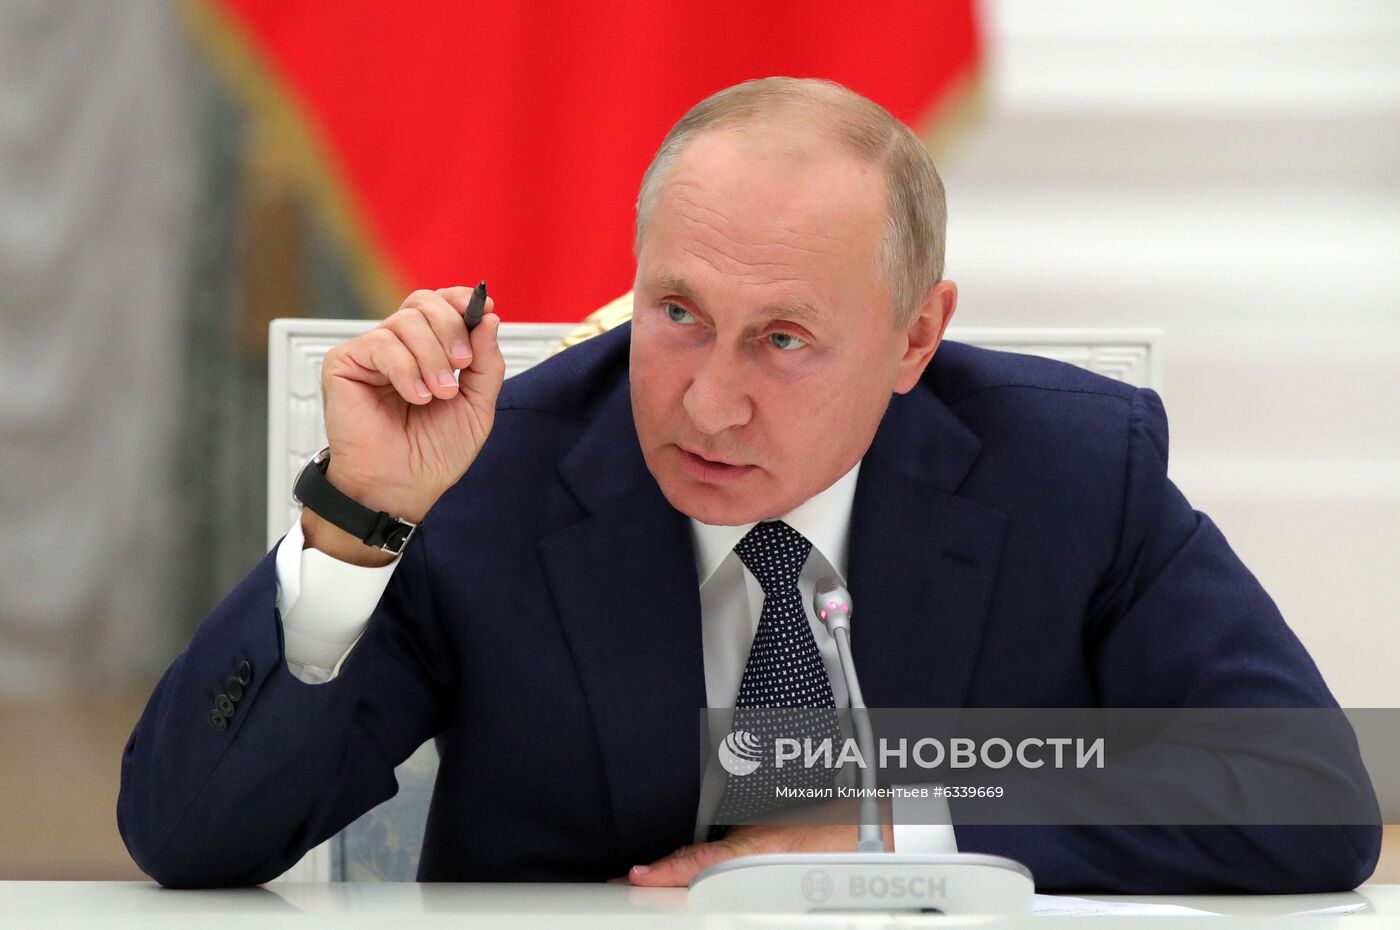 Президент РФ В. Путин встретился с работниками атомной отрасли